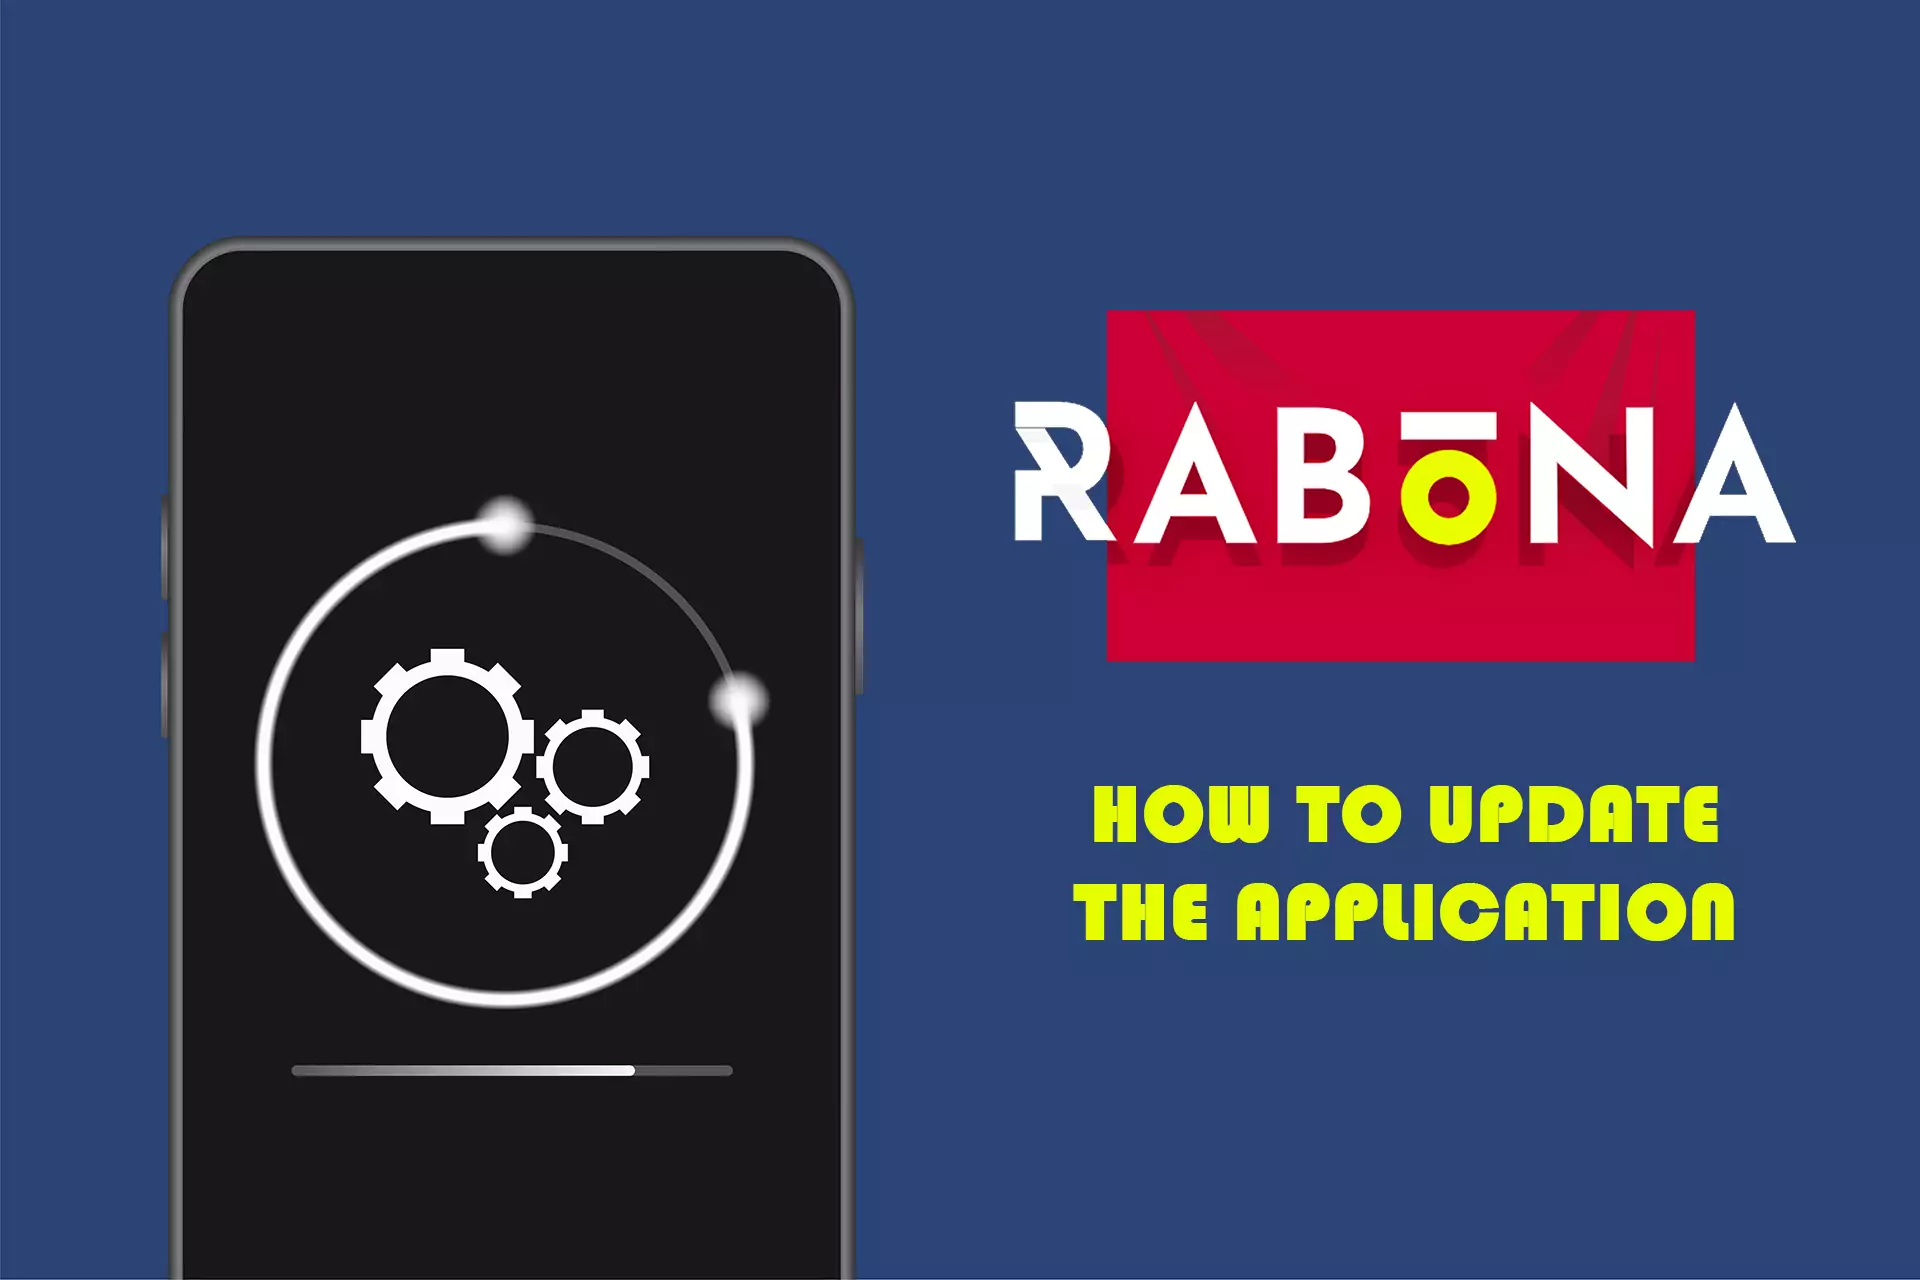 Rabona का ऐप अपने आप अपडेट हो जाता है।